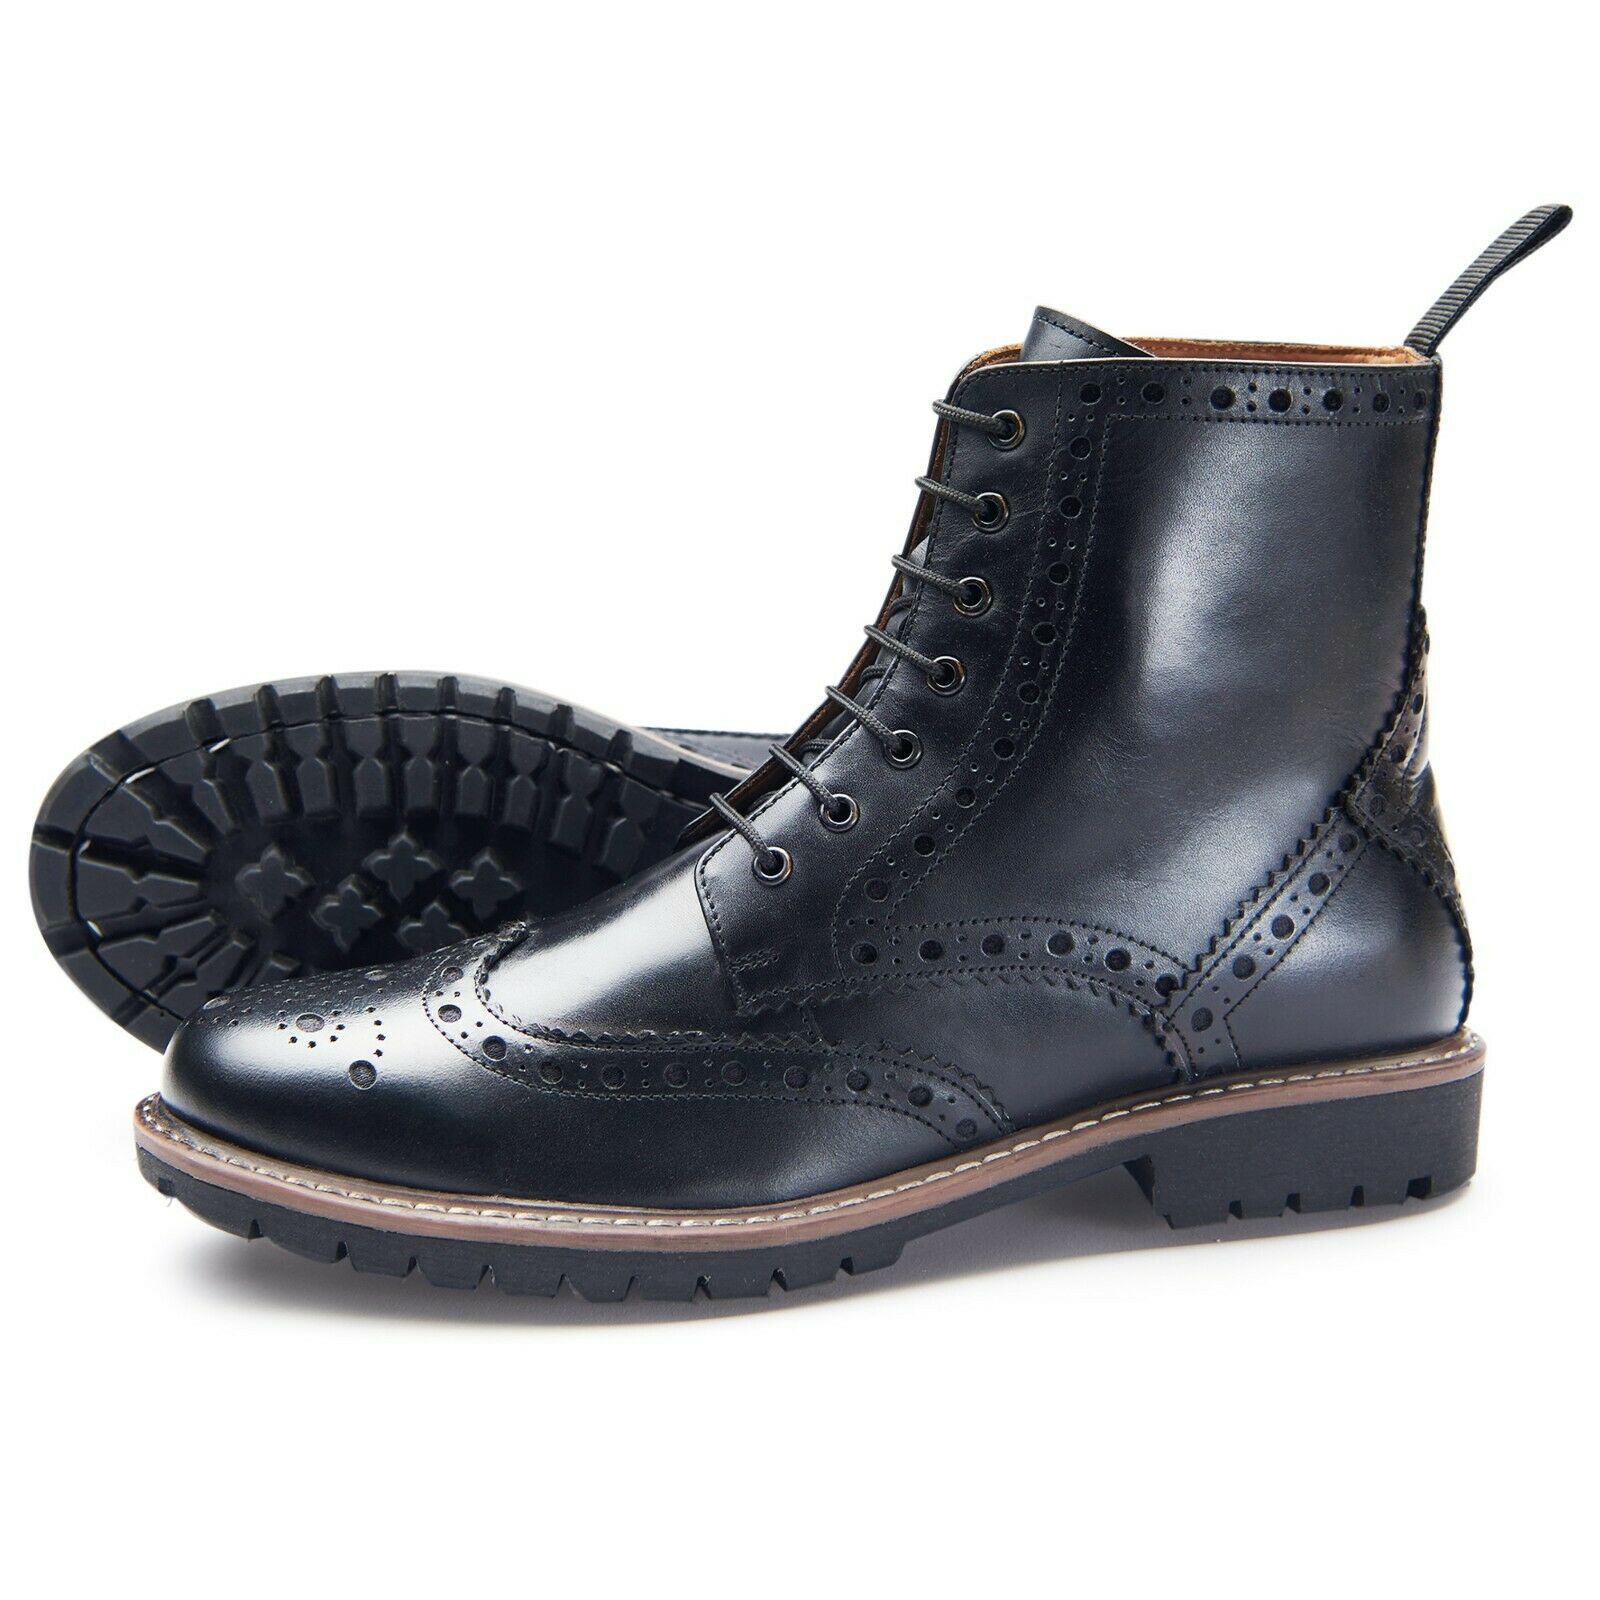 Buy > samuel windsor mens boots > in stock